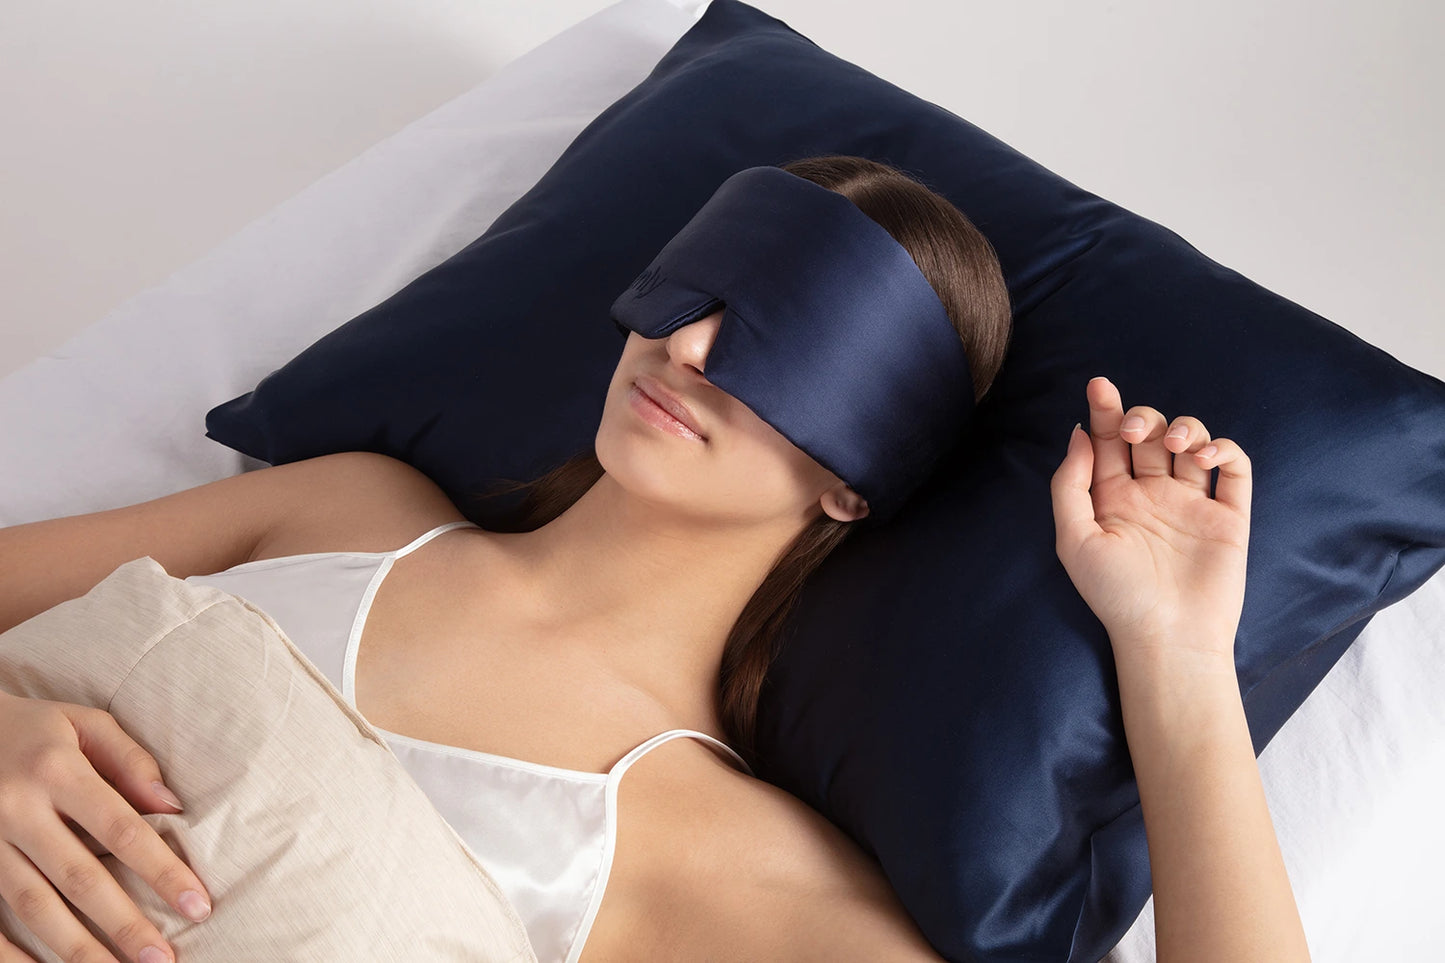 The Remly Sleep Mask